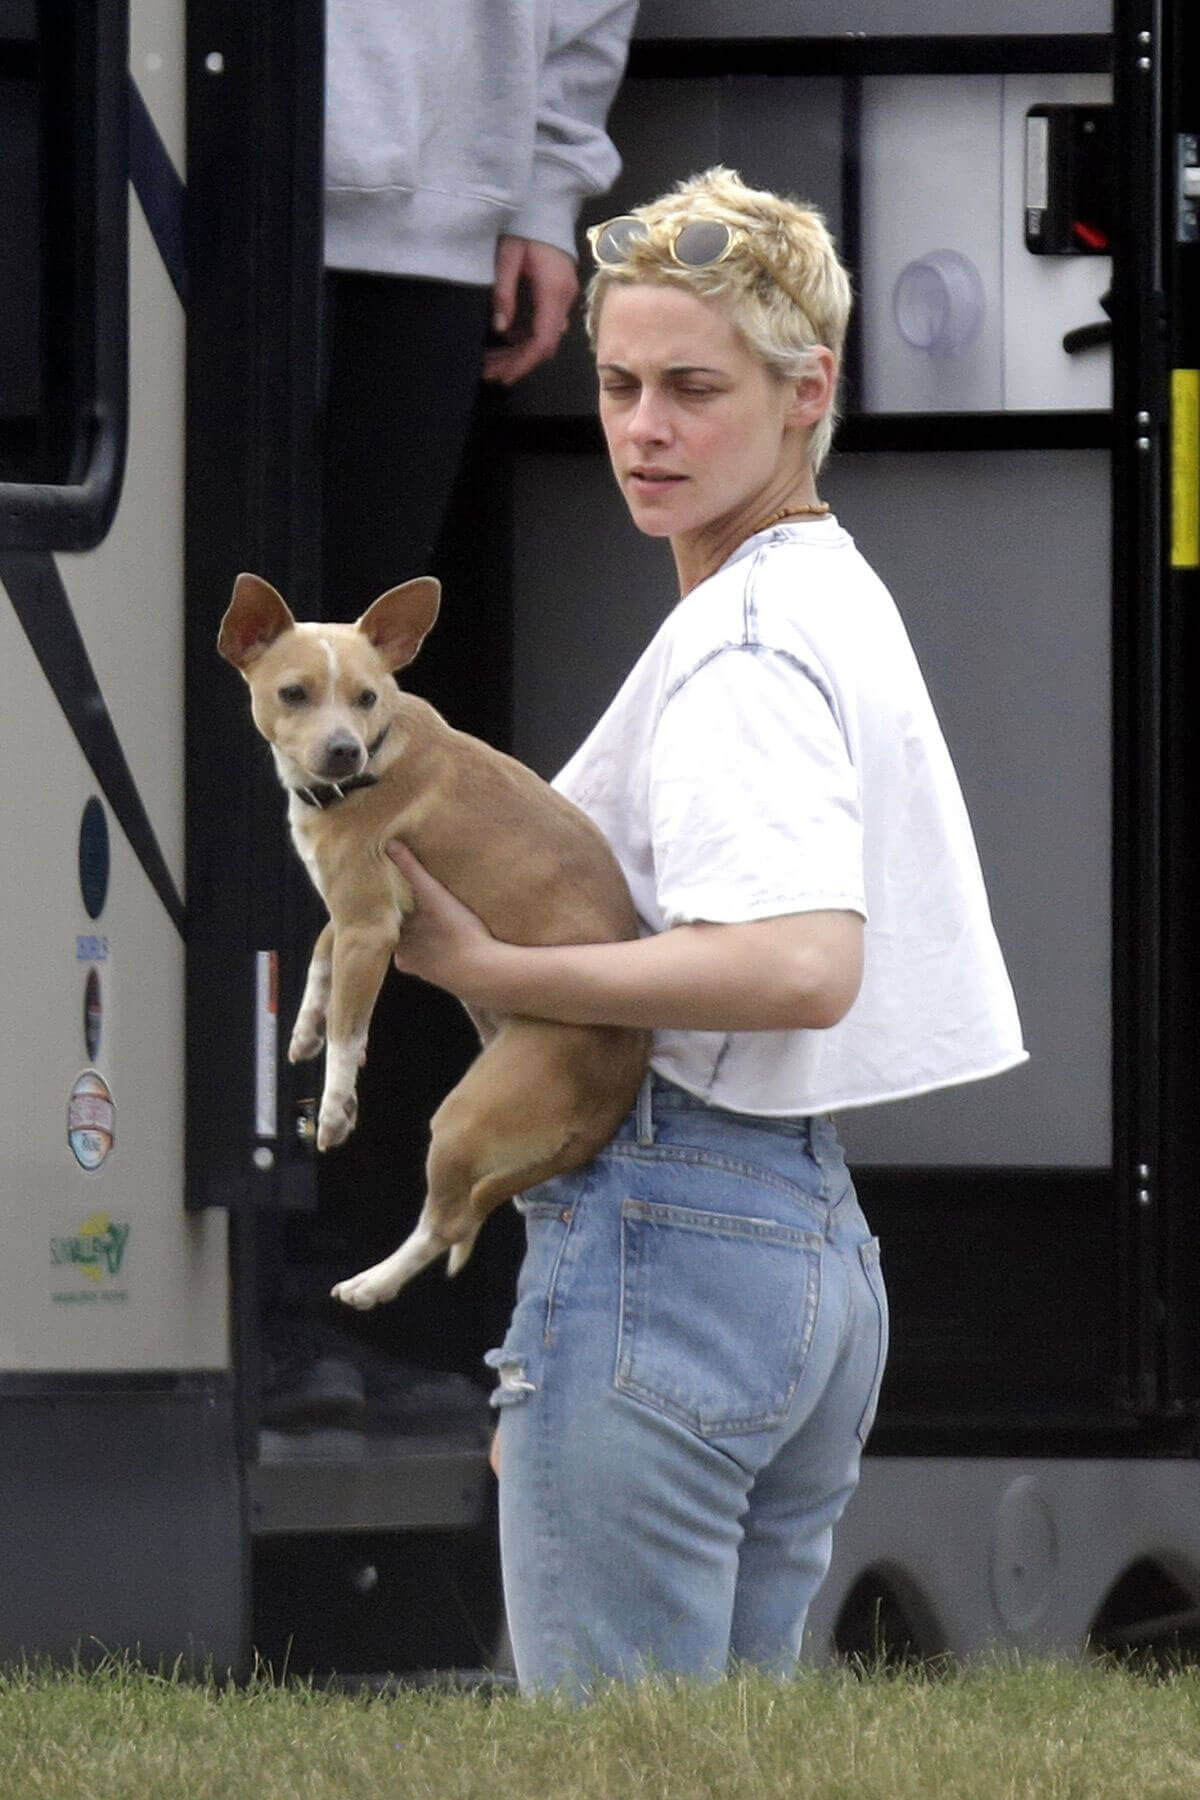 Kristen Stewart Stills Out with Her Dog in Winnipeg